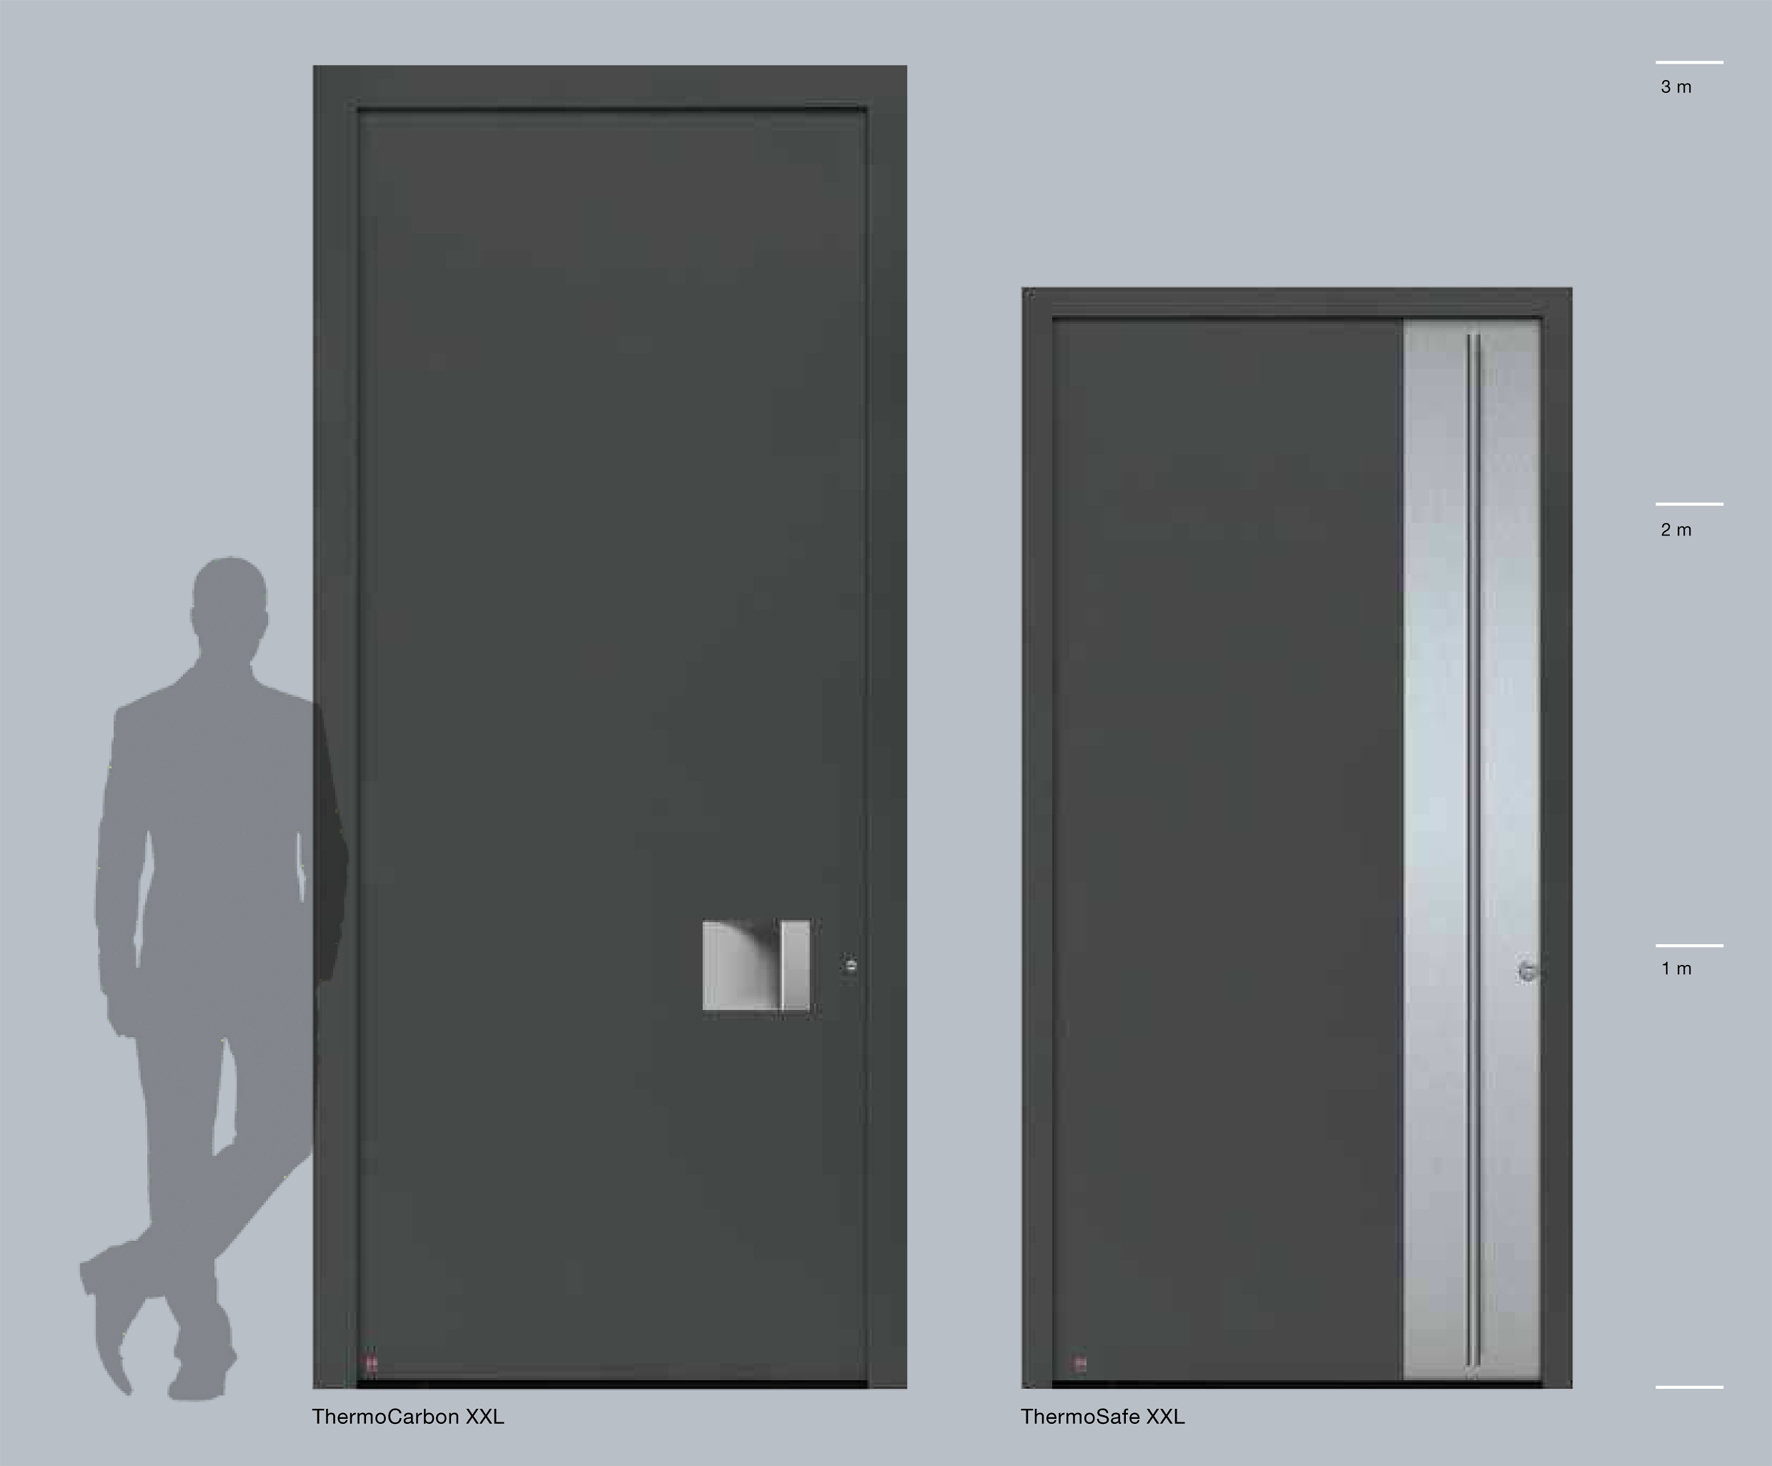  Hliníkové domové dvere Hörmann ThermoSafe a ThermoCarbon je teraz možné zakúpiť aj na výšku miestnosti do výšky 2,5 metra a 3 metre. Domové dvere tým prispievajú k ešte priestrannejšiemu a modernejšiemu vzhľadu vstupnej oblasti. 